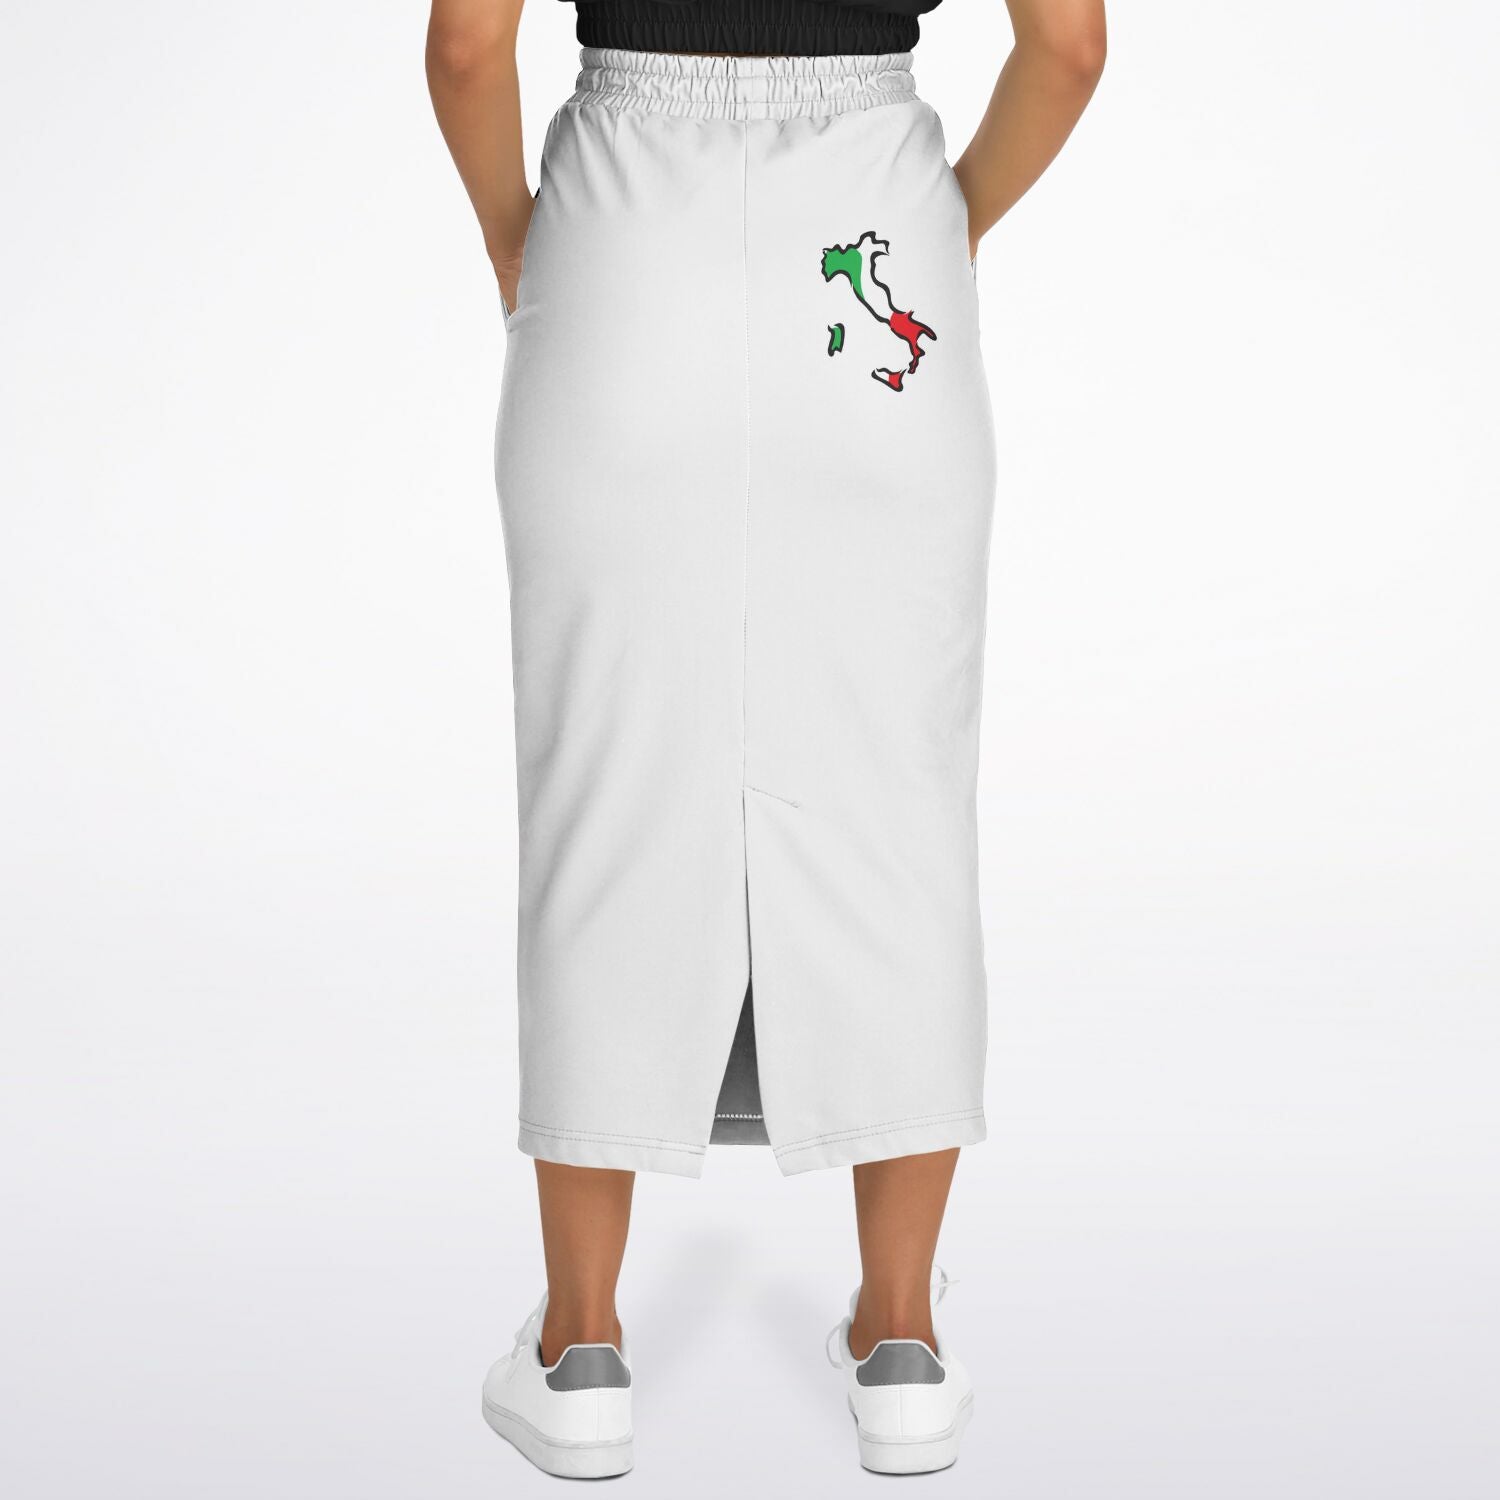 Italia Flag Map Athletic Long Pocket Skirt